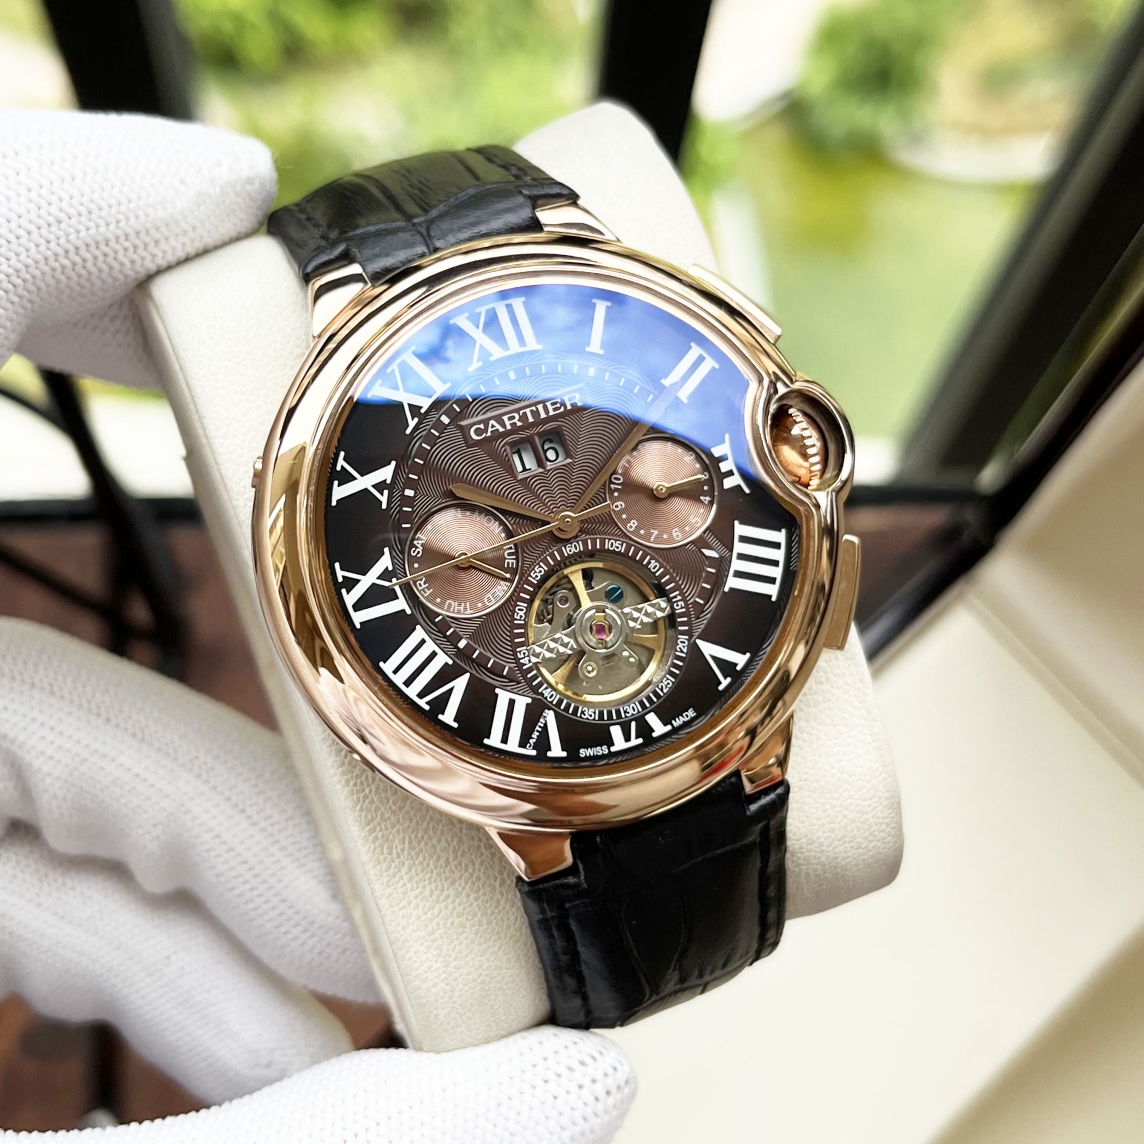 CARTIERカルティエに似てる時計スーパーコピー フランス 薄いワッチ レザー 丸い形 ブラウン_1